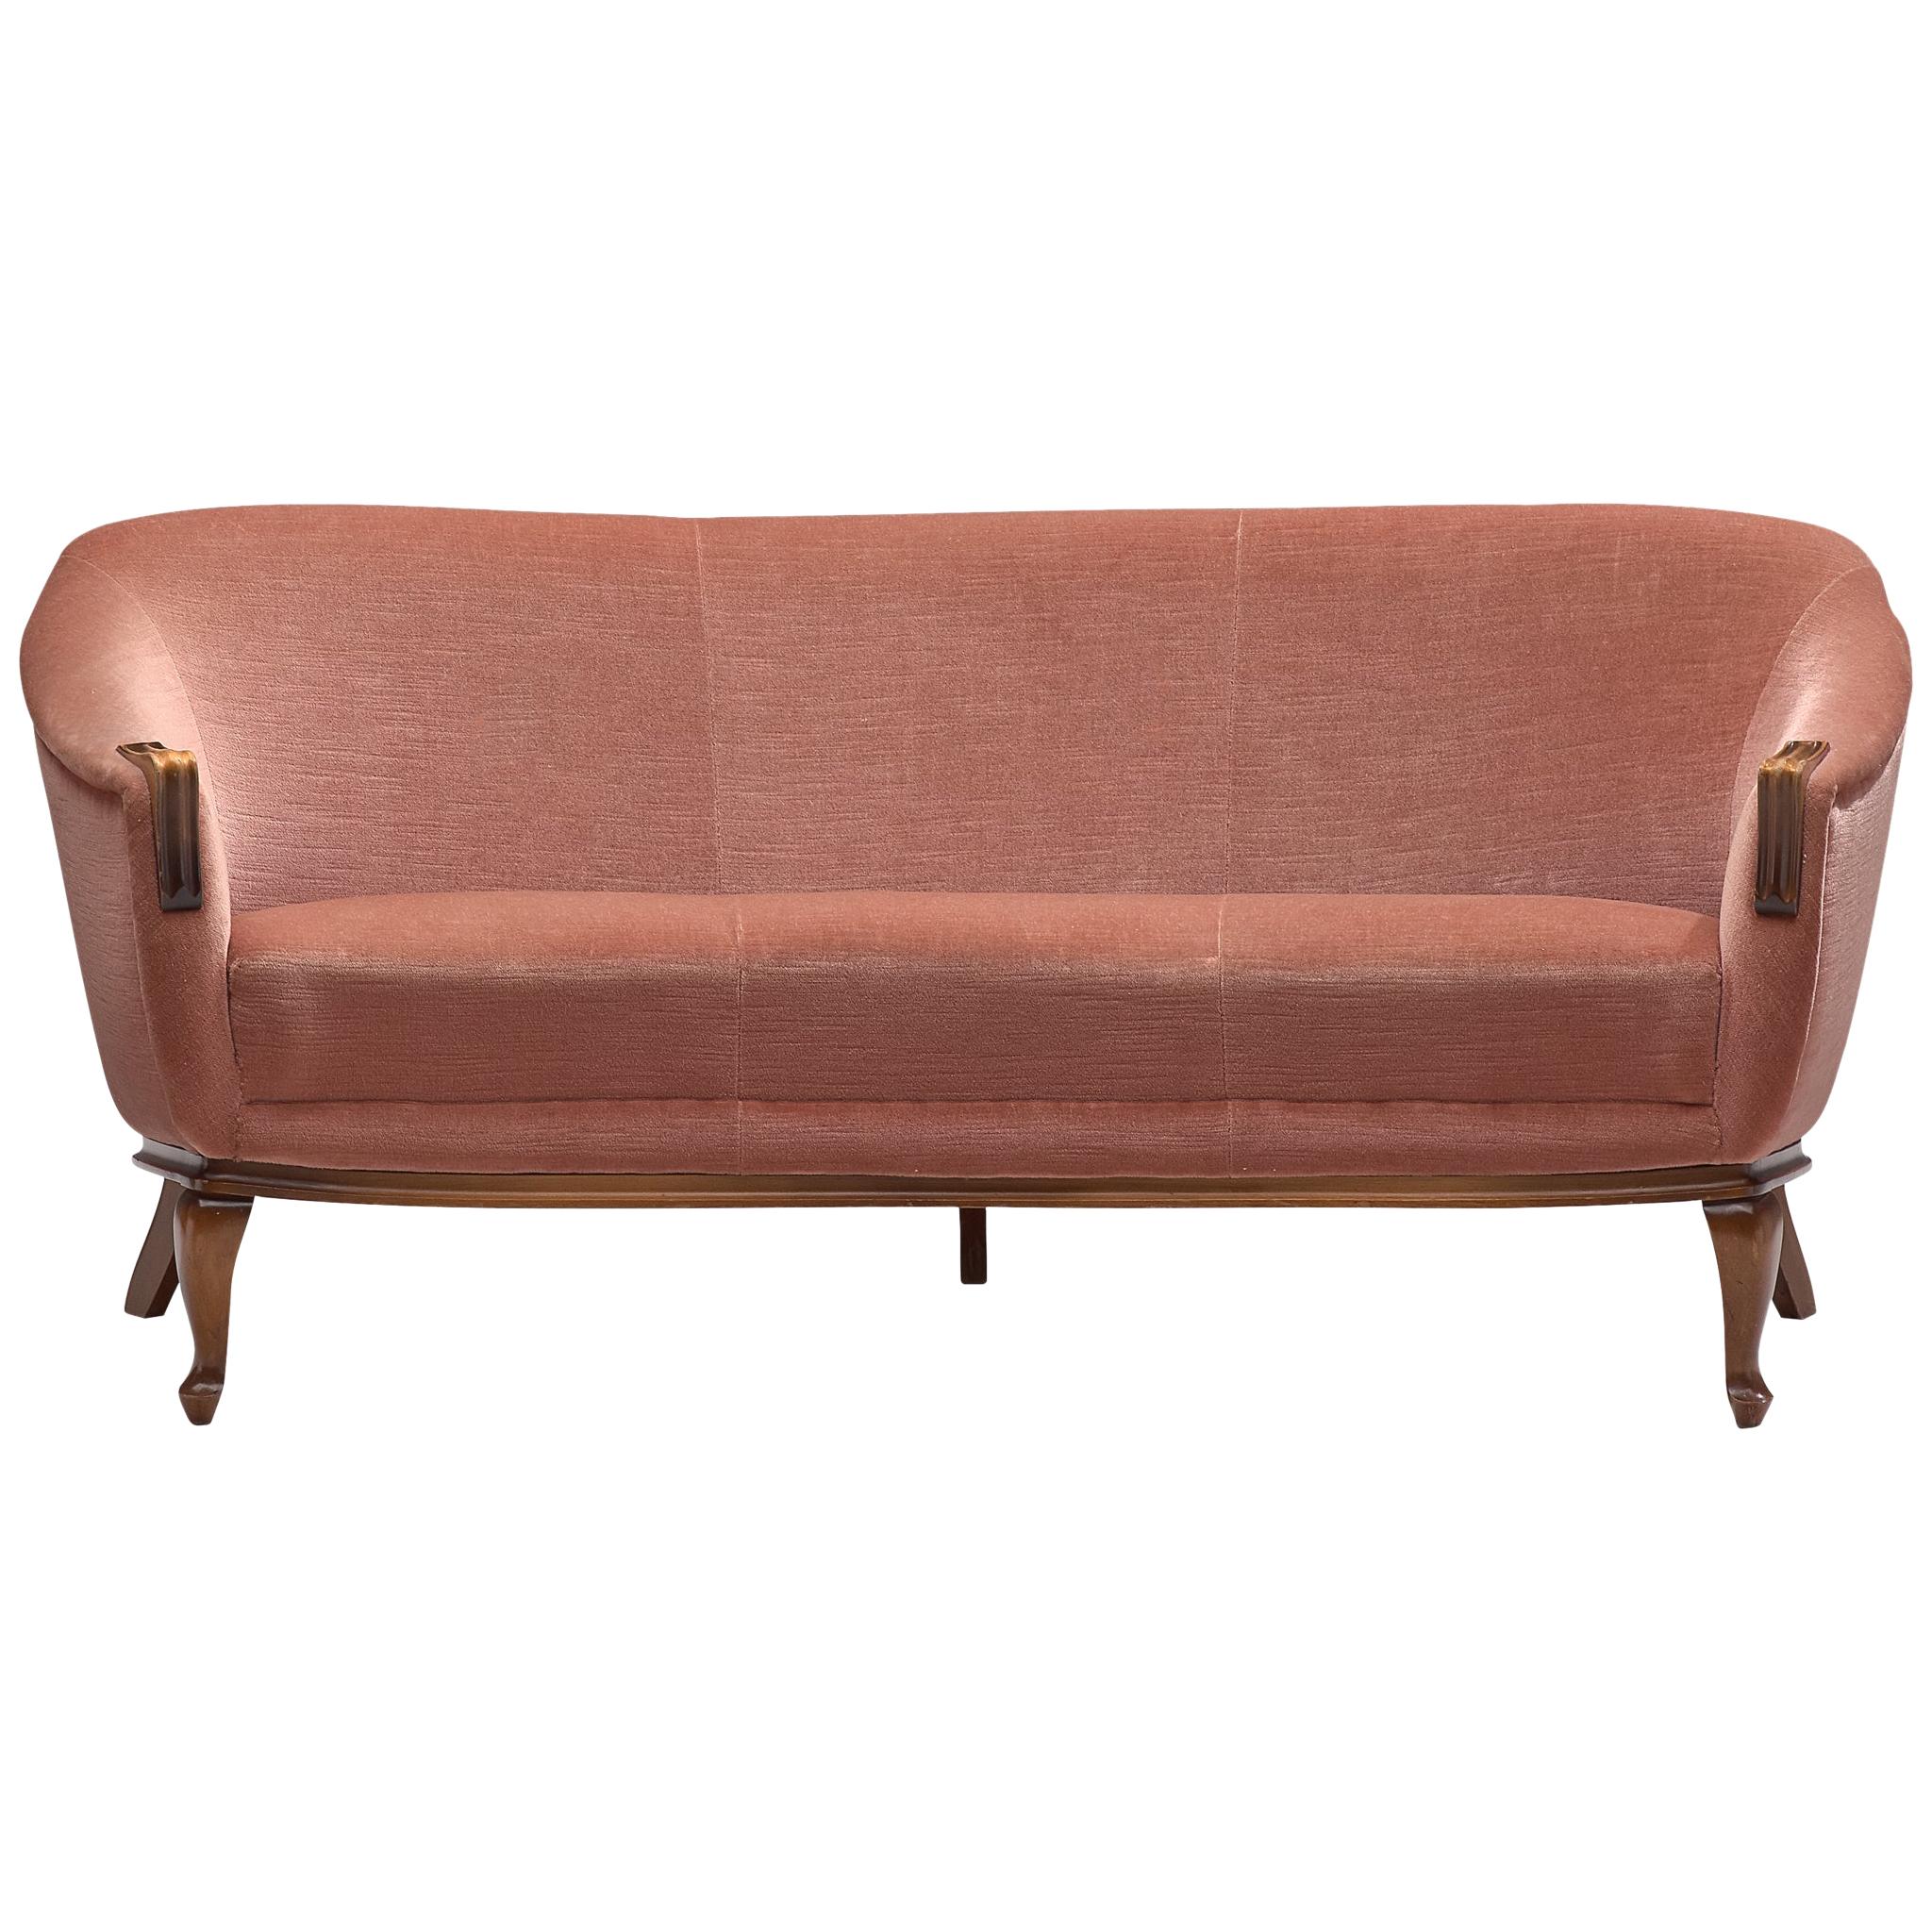 Three-Seat Sofa, Pink Velvet and Oak, Denmark, 1940s